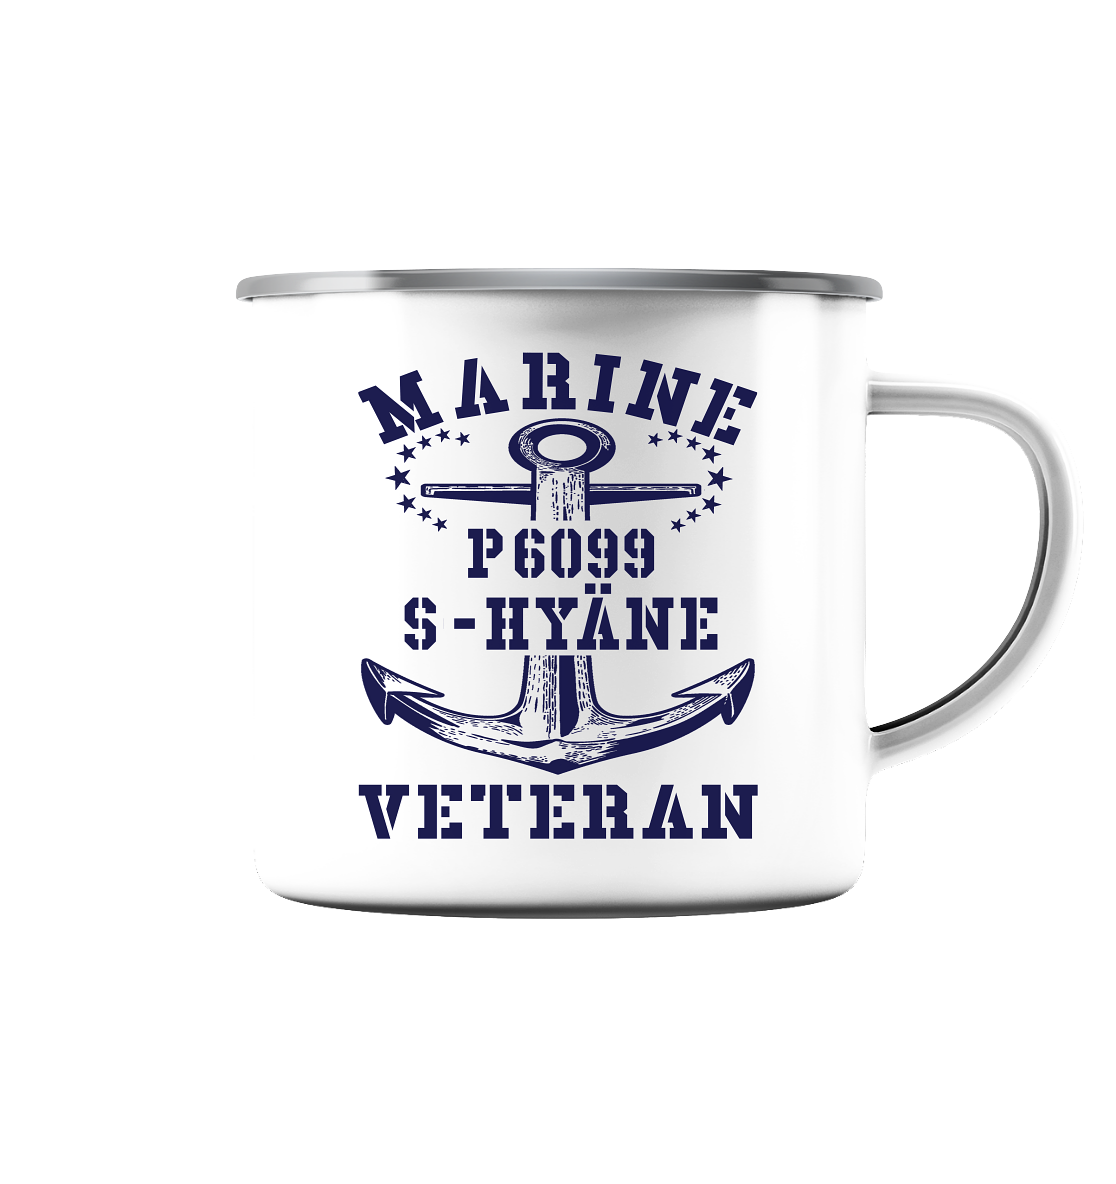 P6099 S-HYÄNE Marine Veteran - Emaille Tasse (Silber)